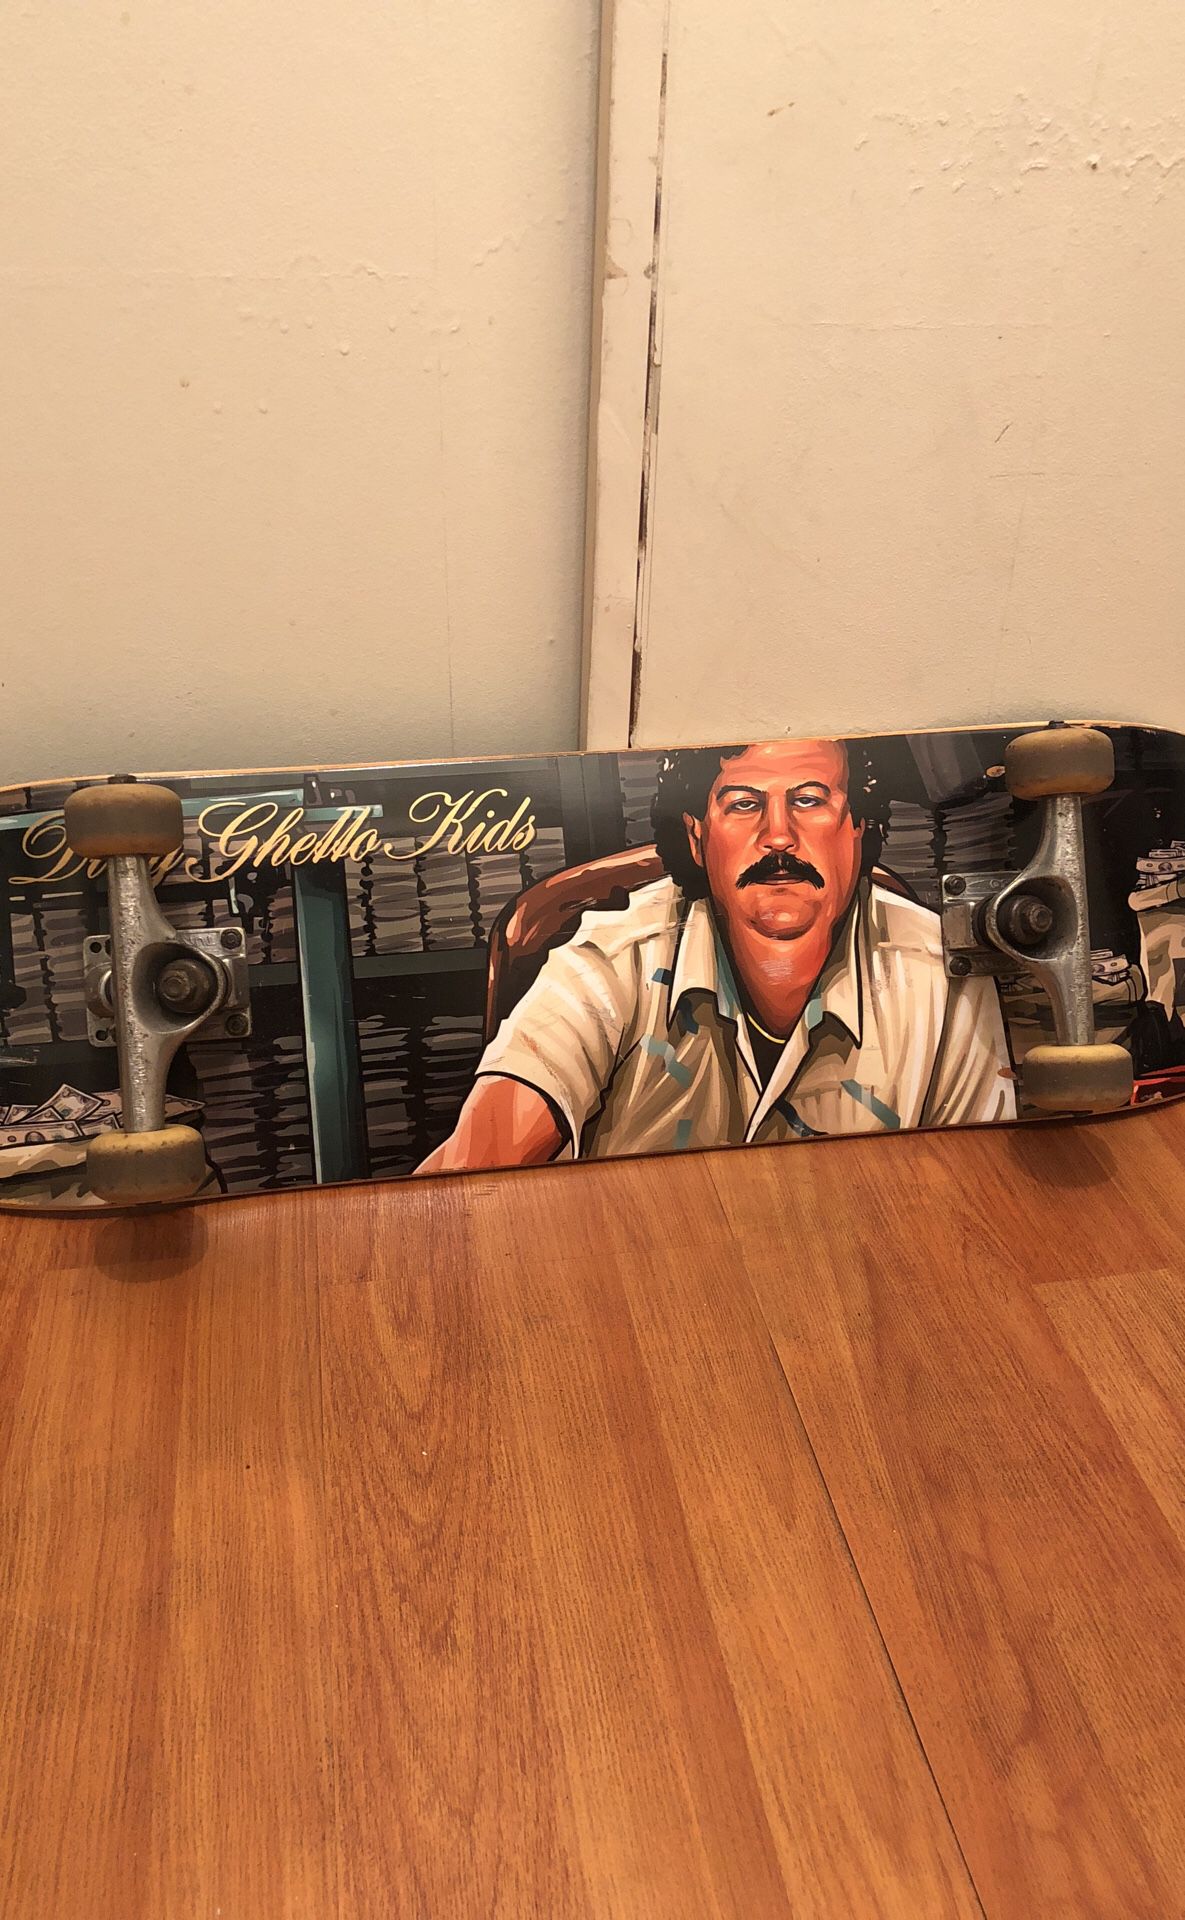 Dgk skateboard(Pablo Escobar)